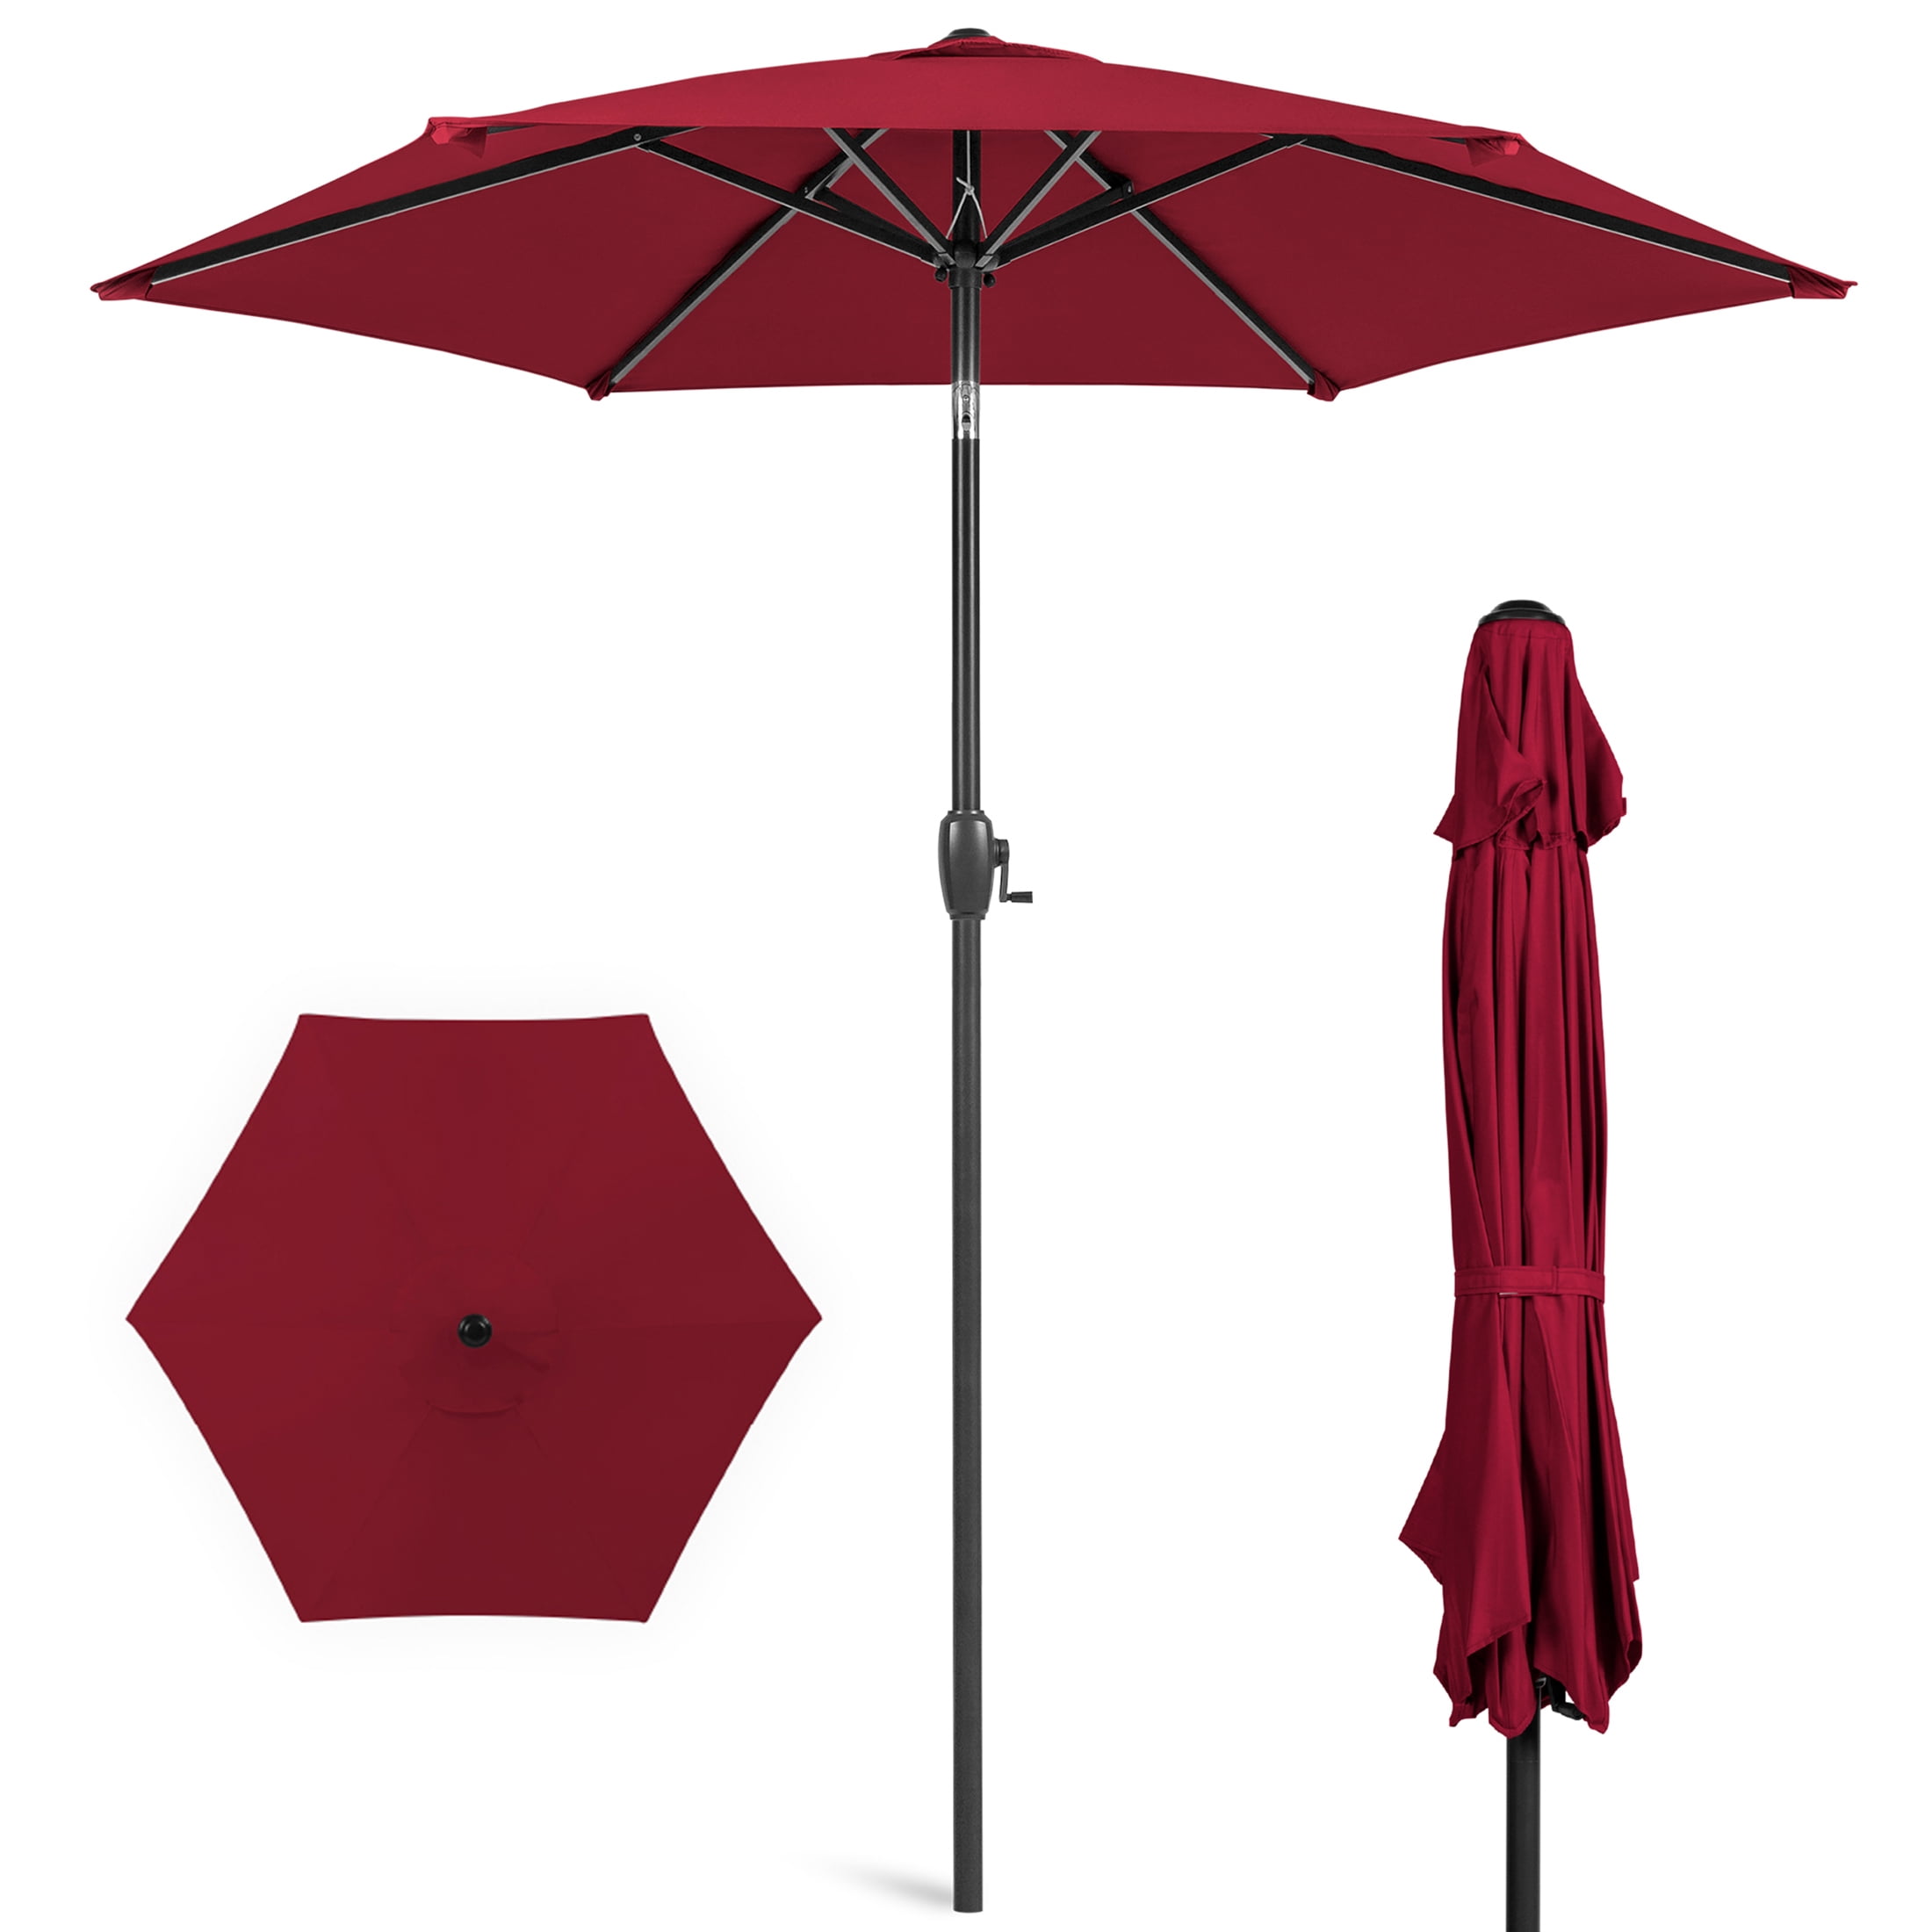 Umbrella 6 Ribs with Tilt and Crank 7.5 FT Patio Umbrella Sunlight